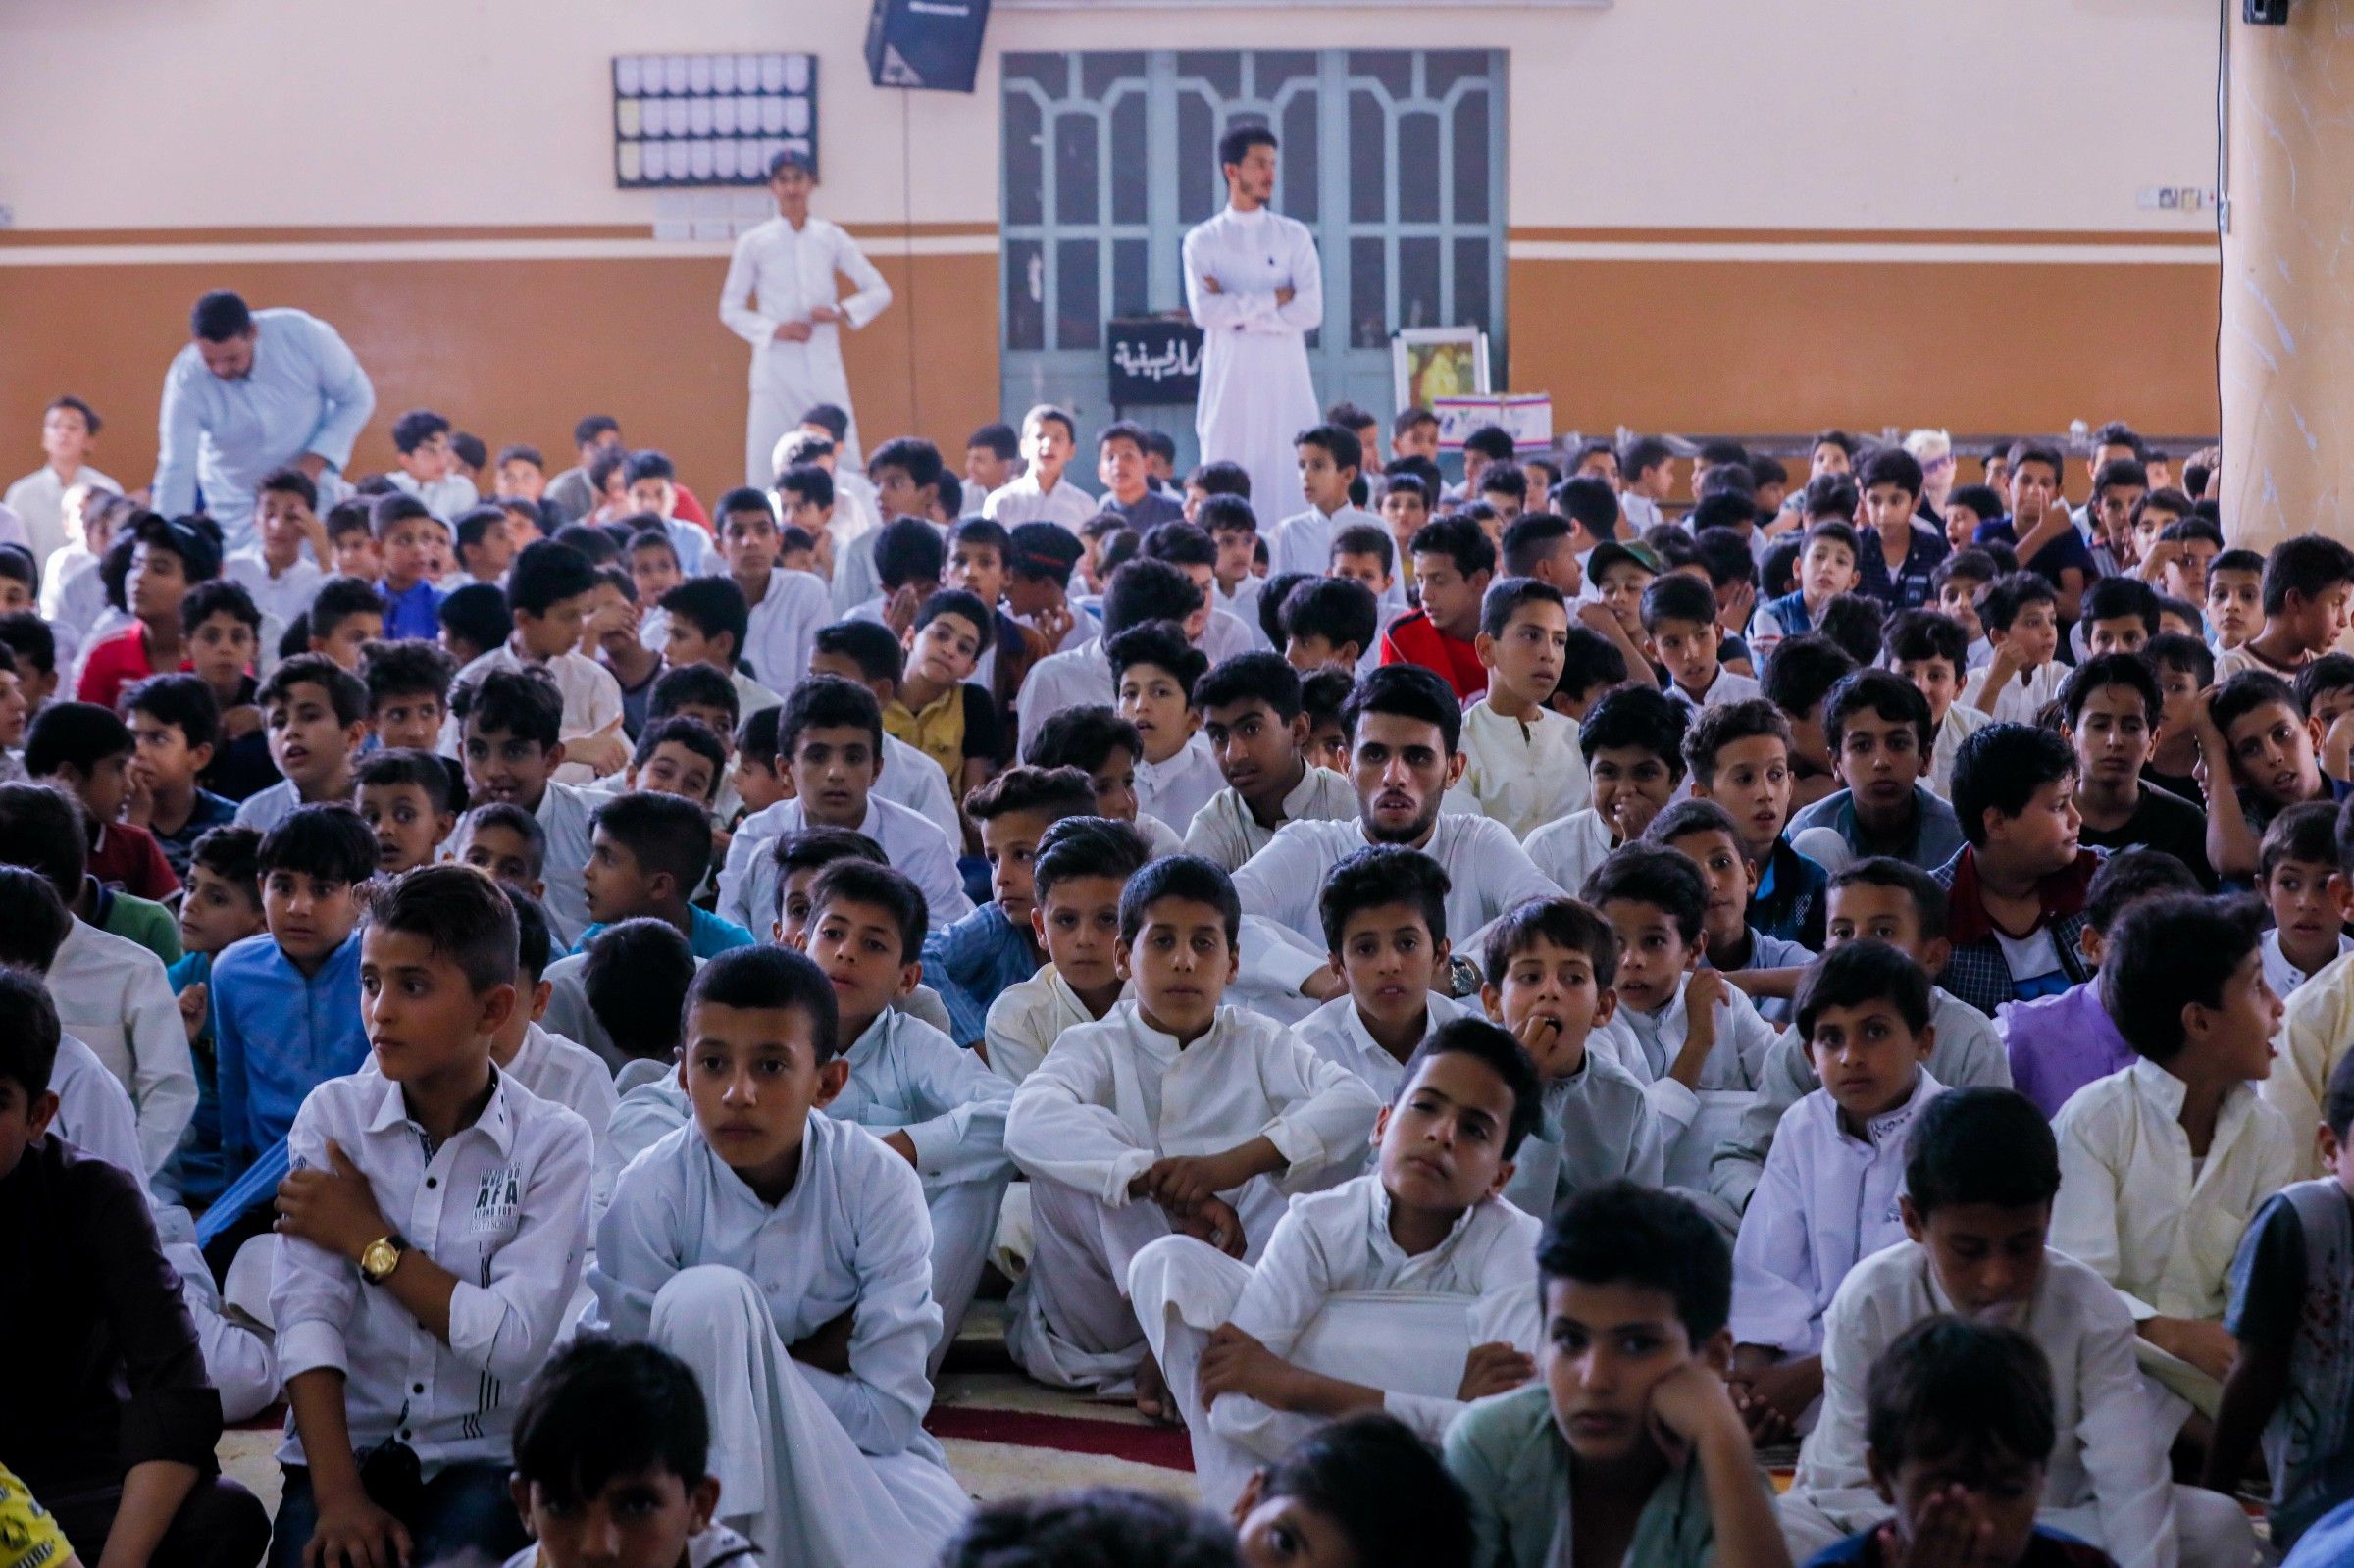 قضاء الخضر في المثنى يشهد تخرج أكثر من 1,800 طالب من مشروع الدورات القرآنية الصيفية